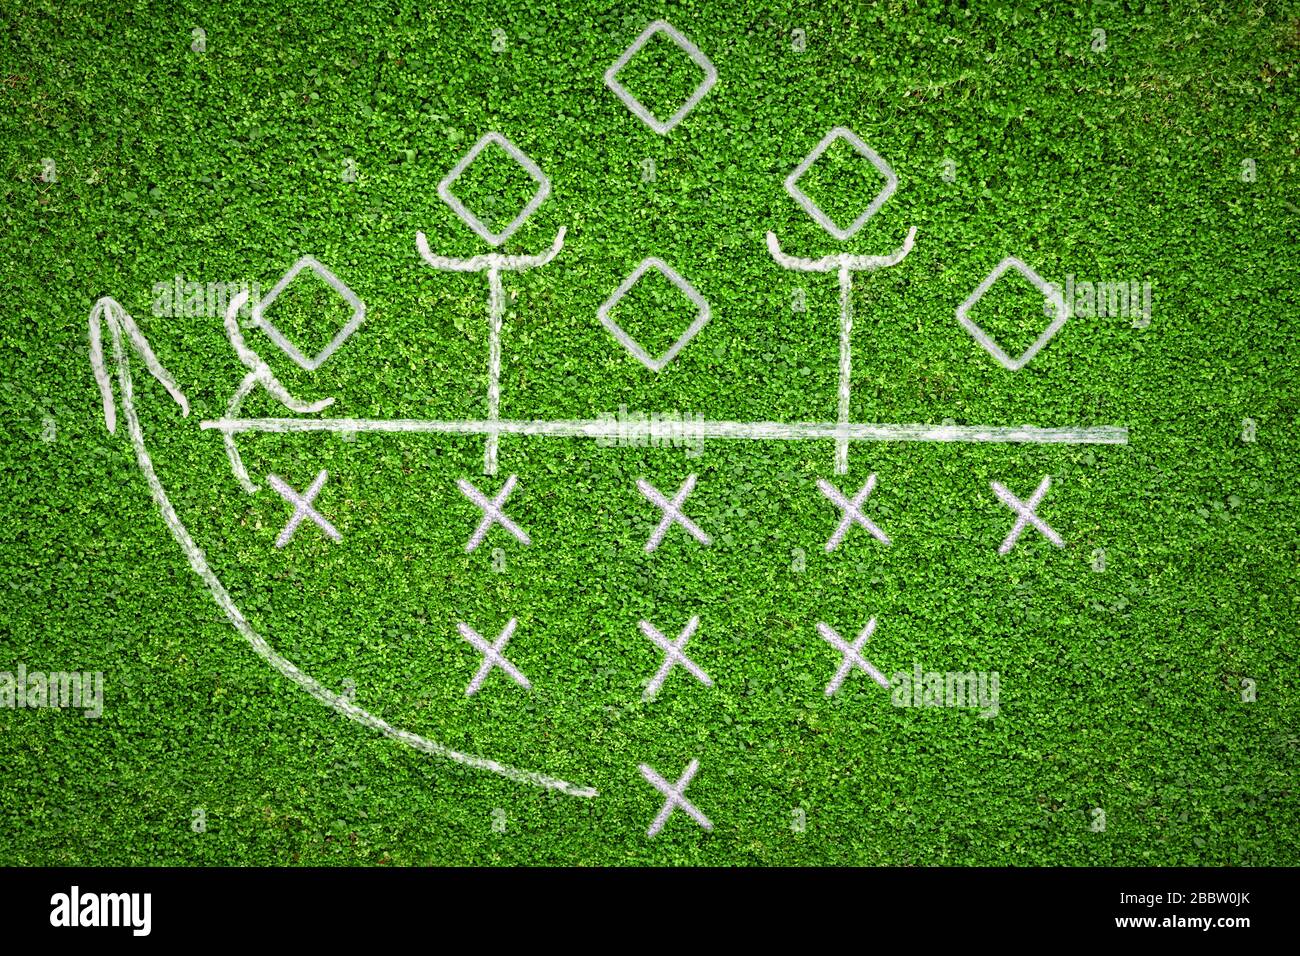 Fußball-Spielplan auf Grasgrund mit einigen Taktiken darauf Stockfoto